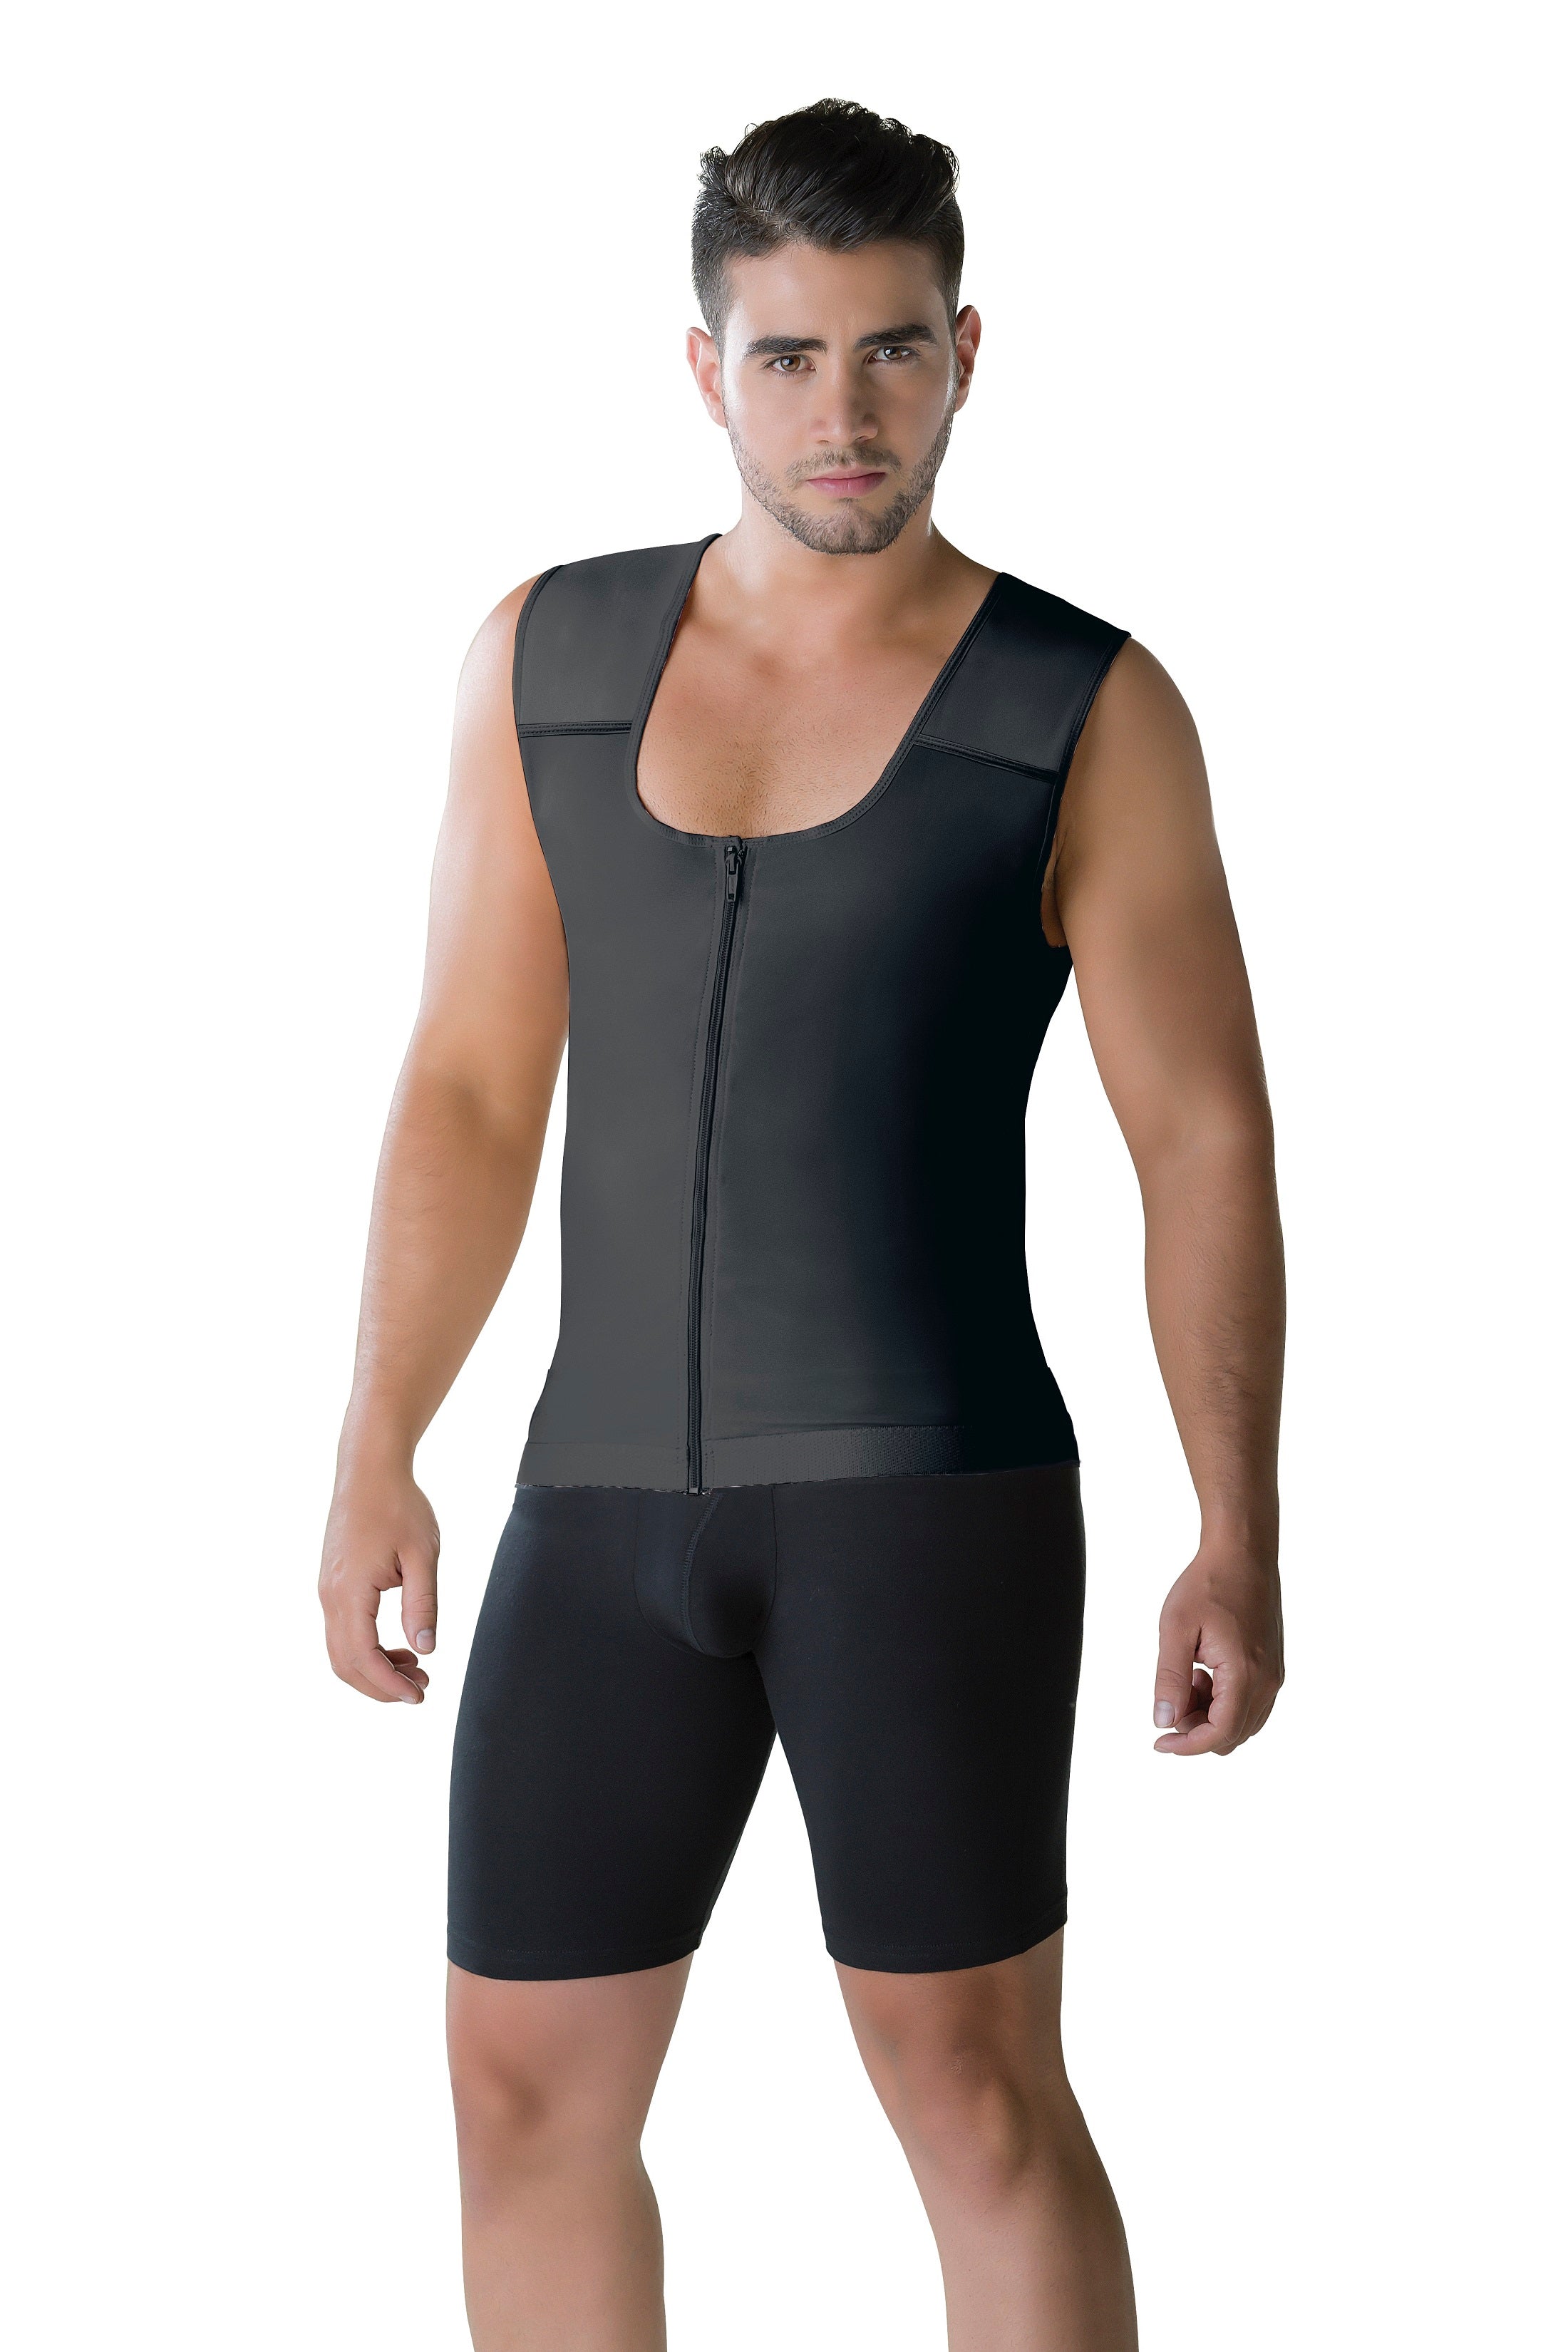 Men's Slimming Zipped Body Shaper Vest